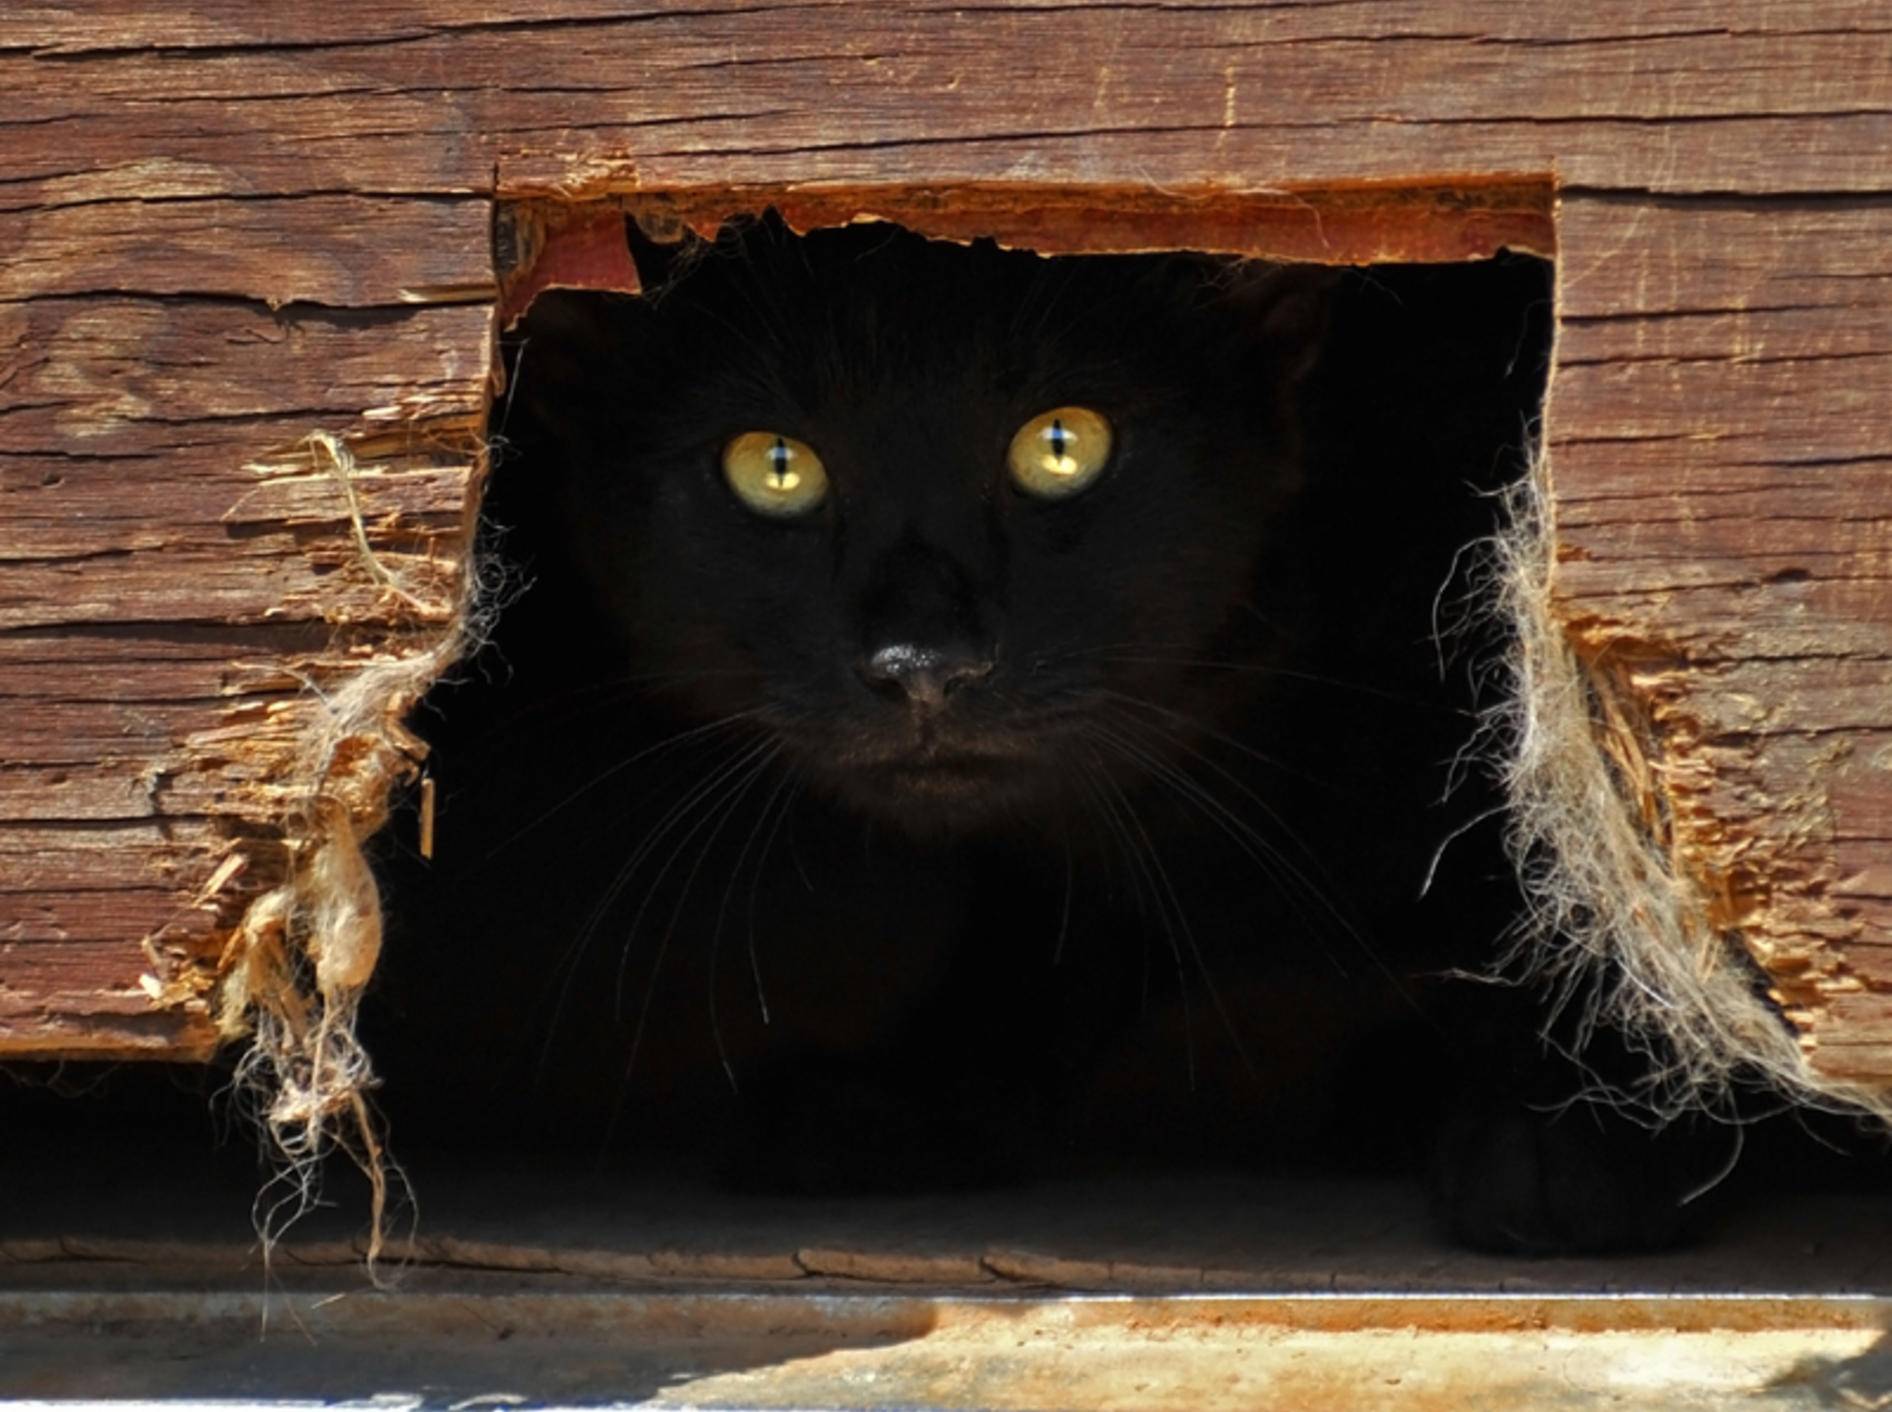 Katzen können sich unsichtbar machen und besitzen noch viele andere "Superkräfte" – Shutterstock / dmvphotos